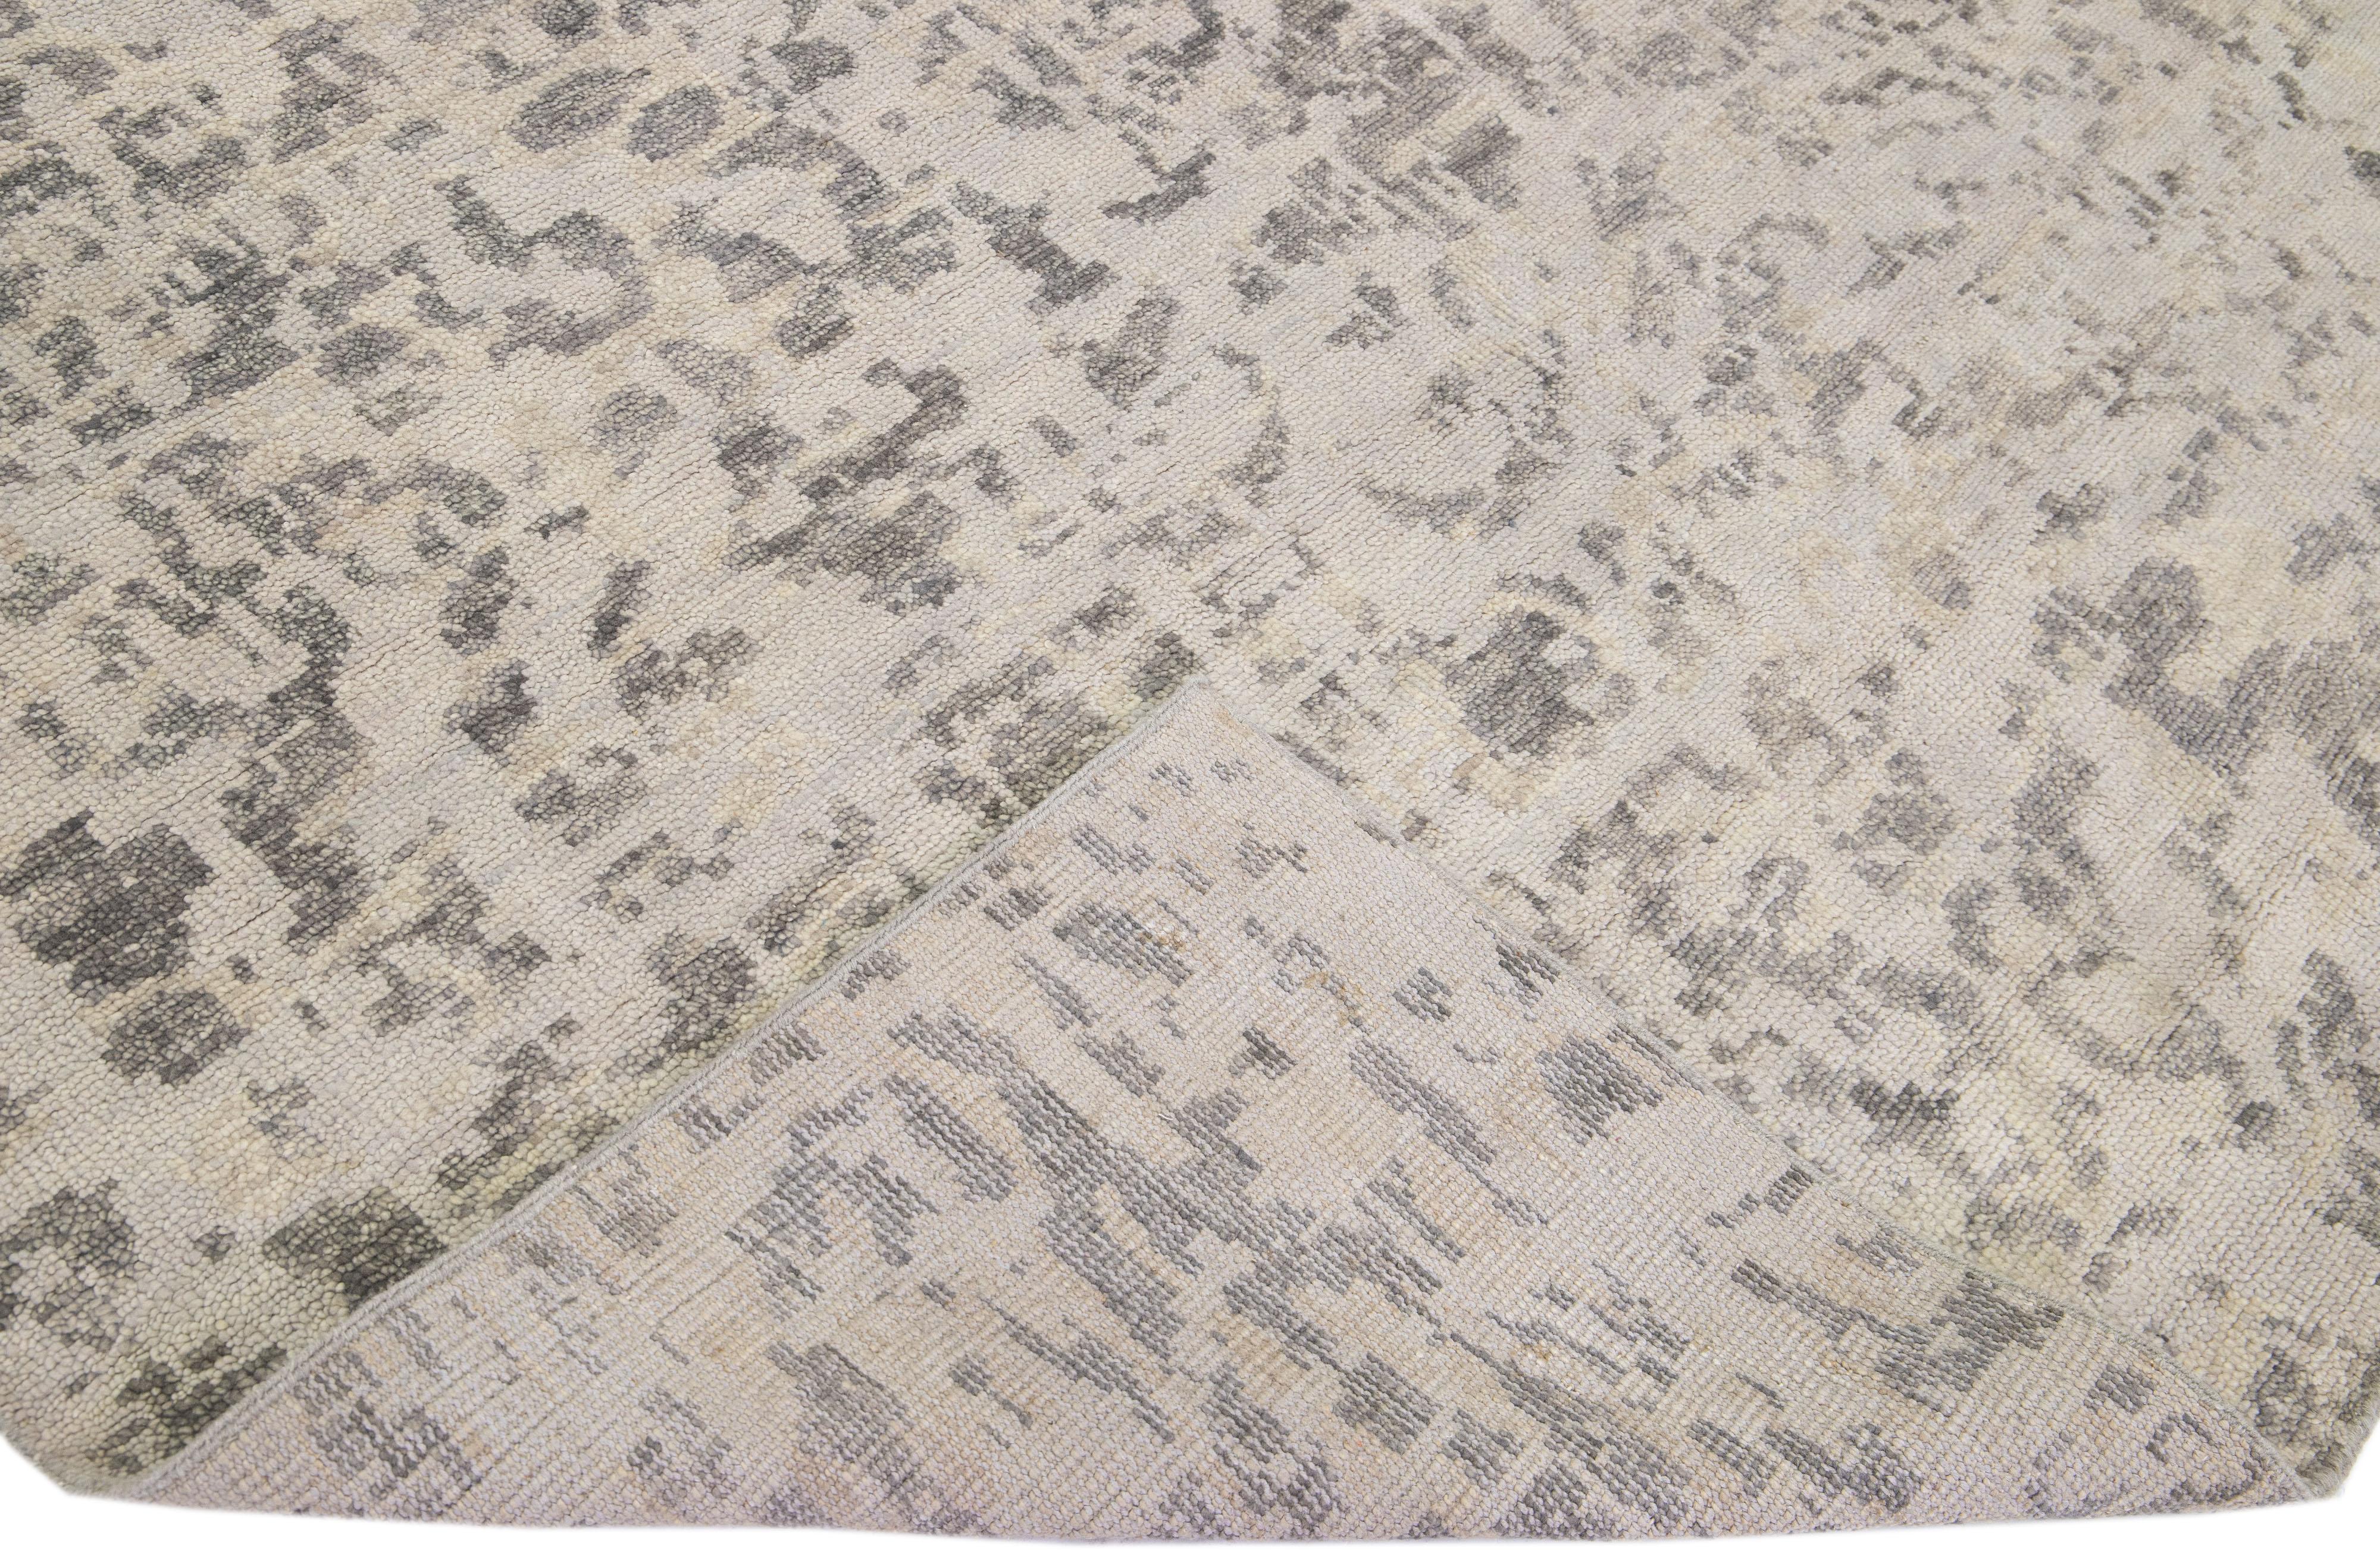 Schöne zeitgenössische Teppiche von Thom Filicia Home Collection. Dieser indische handgeknüpfte Teppich aus Wolle hat ein grau-beiges Feld und dunkelgraue Akzente im gesamten Design. 
Thom Filicias Auge für exquisite Details und schöne Texturen